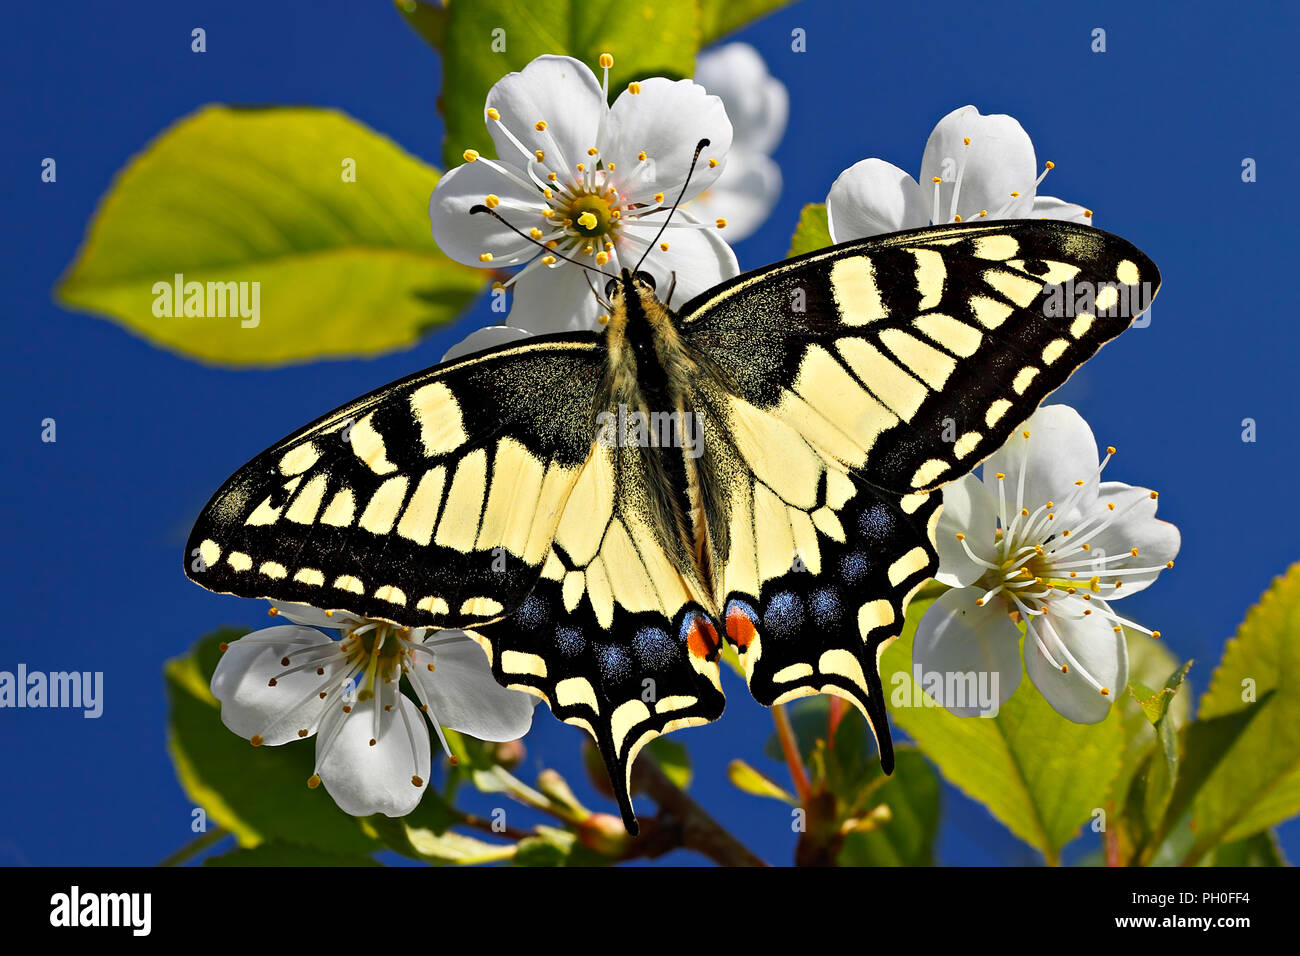 Papilio machaon o swallowtail amarillo común mariposa en primavera florecen en el fondo del cielo. Foto de stock